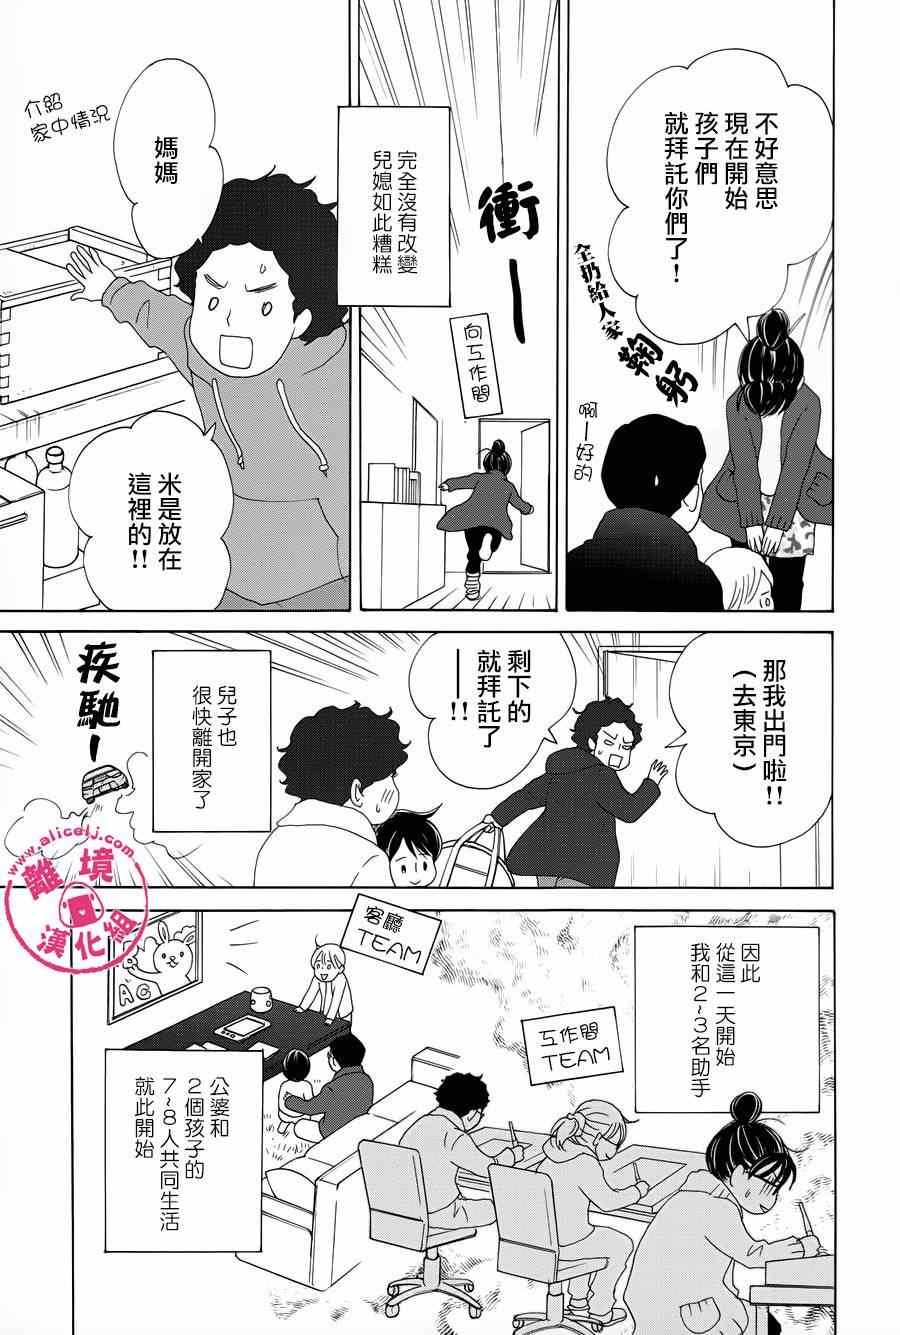 《饭团通信~废柴妈妈日记~》漫画 废柴妈妈日记 028-31话